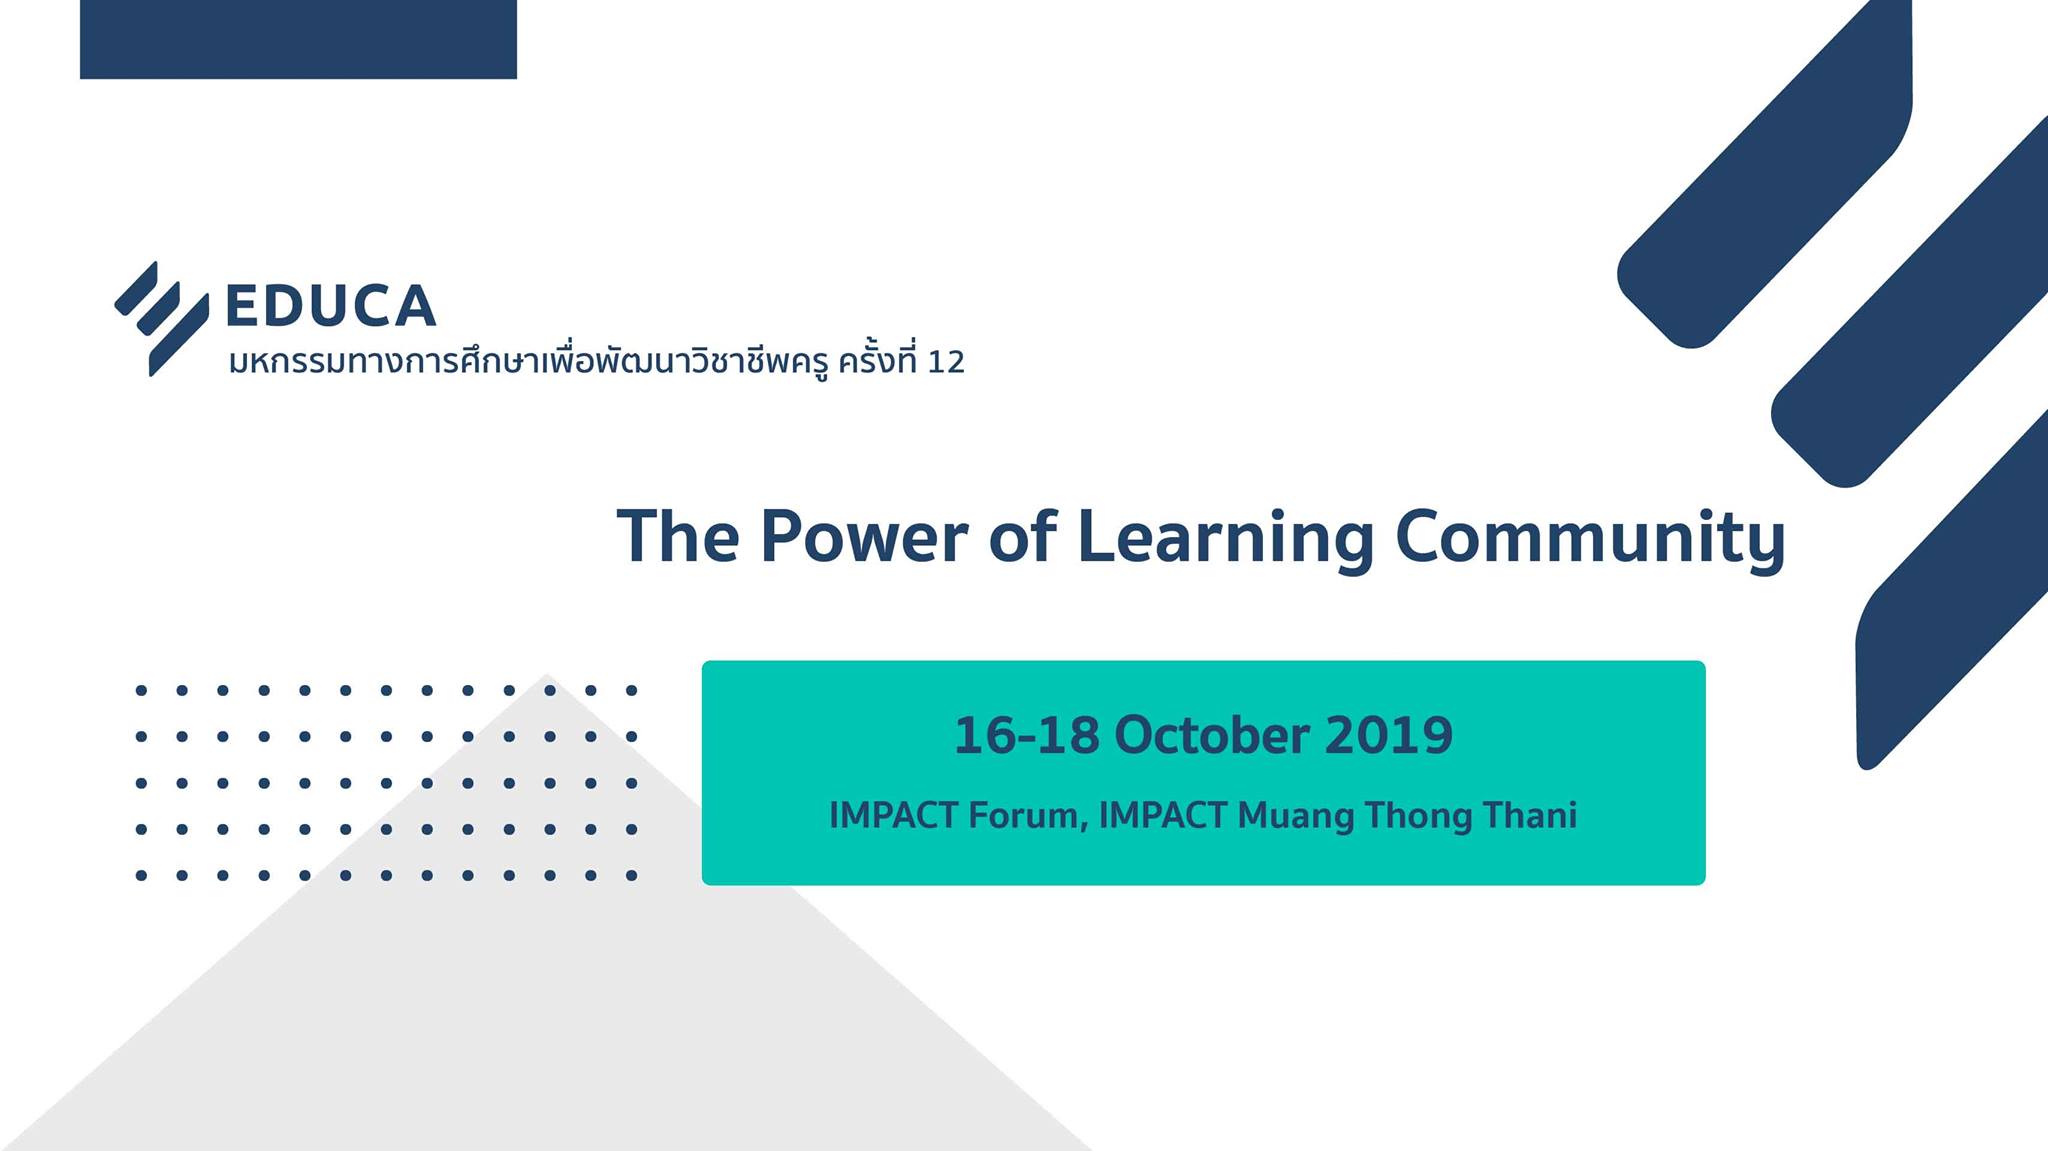 งานมหกรรมทางการศึกษาเพื่อพัฒนาวิชาชีพครู ครั้งที่ 12 EDUCA 2019